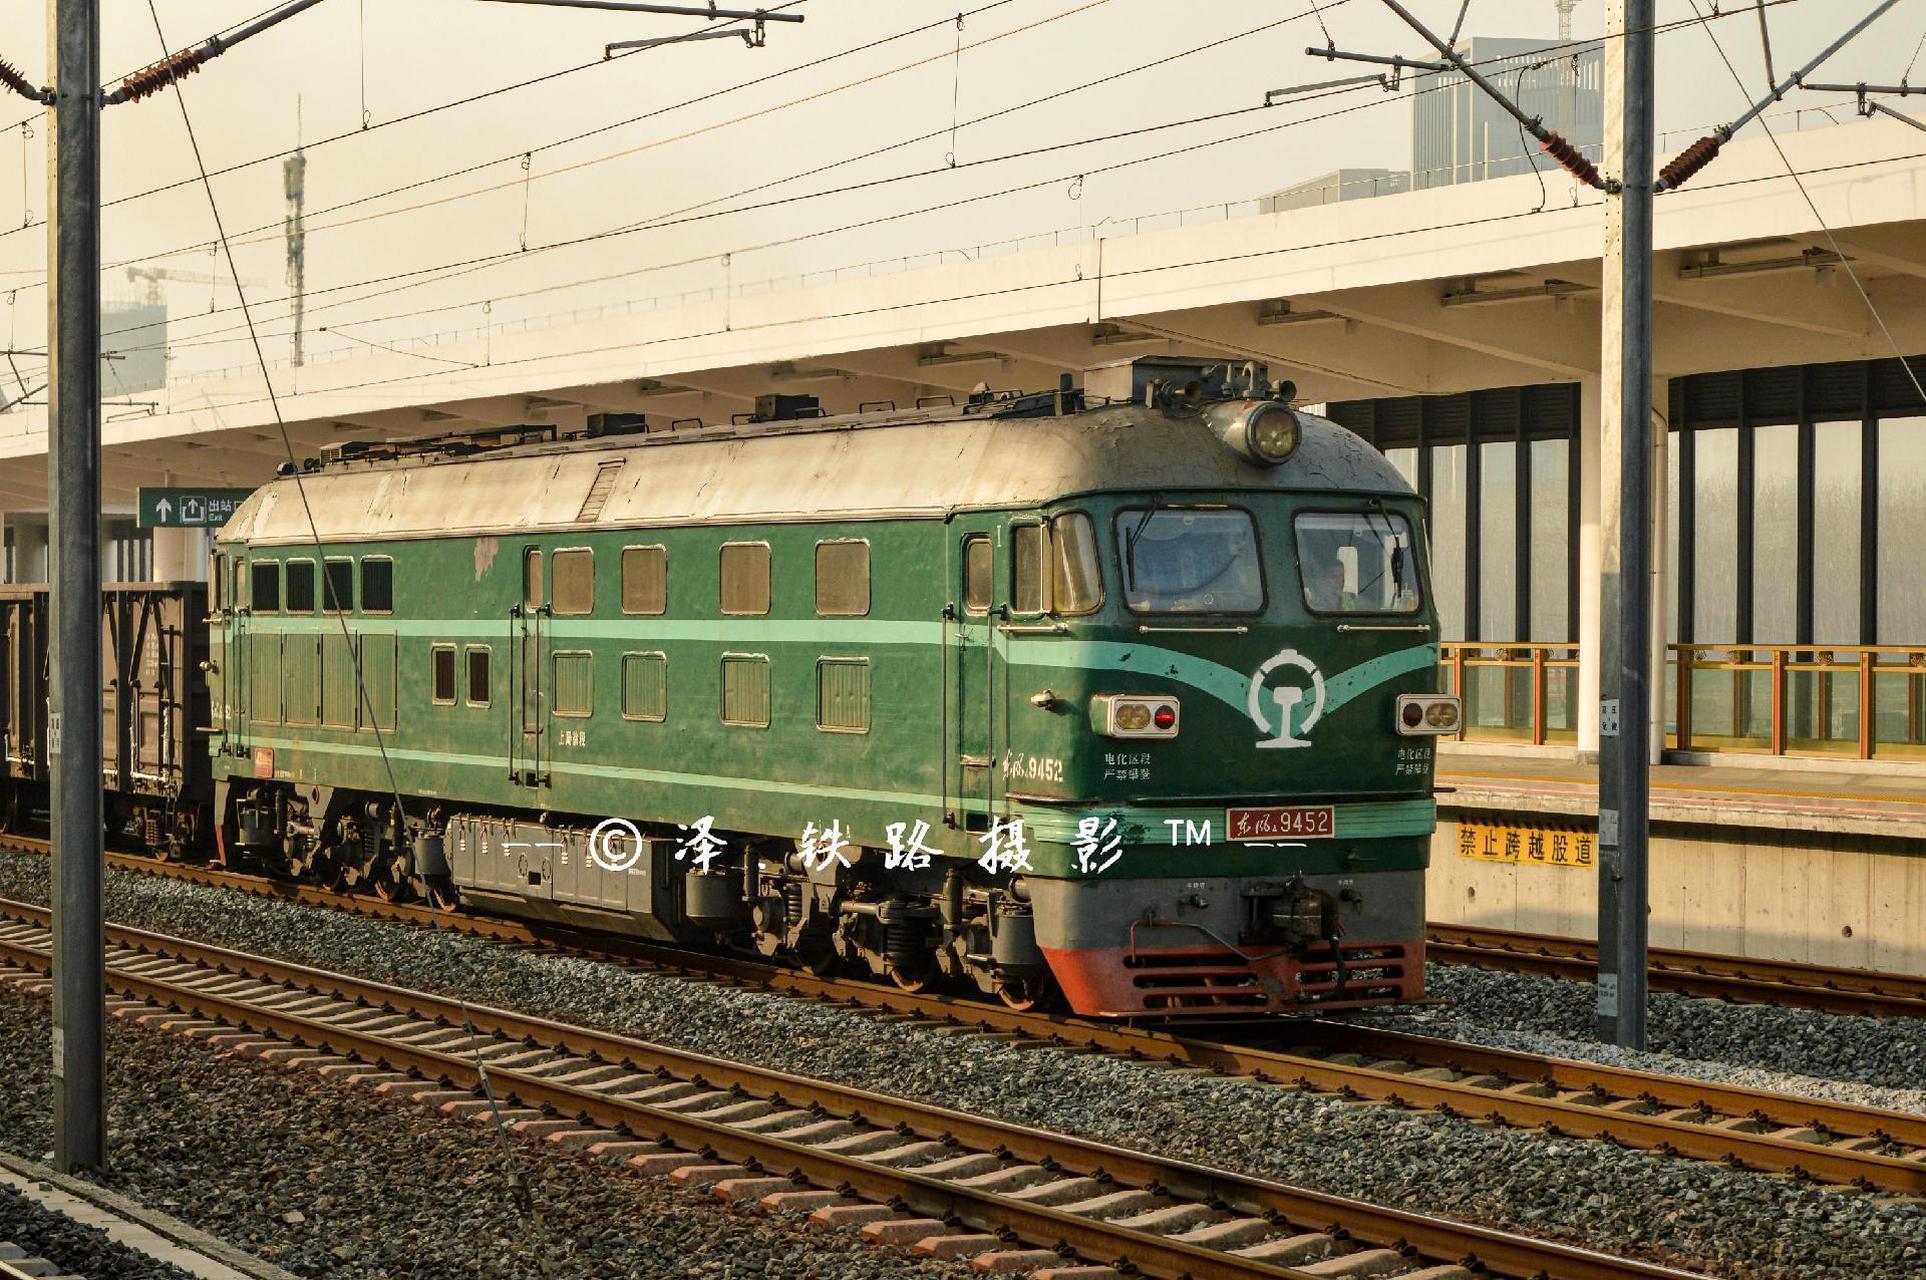 老骥伏翼·志在千里 东风4b型内燃机车(df4b)是中国铁路使用的一种